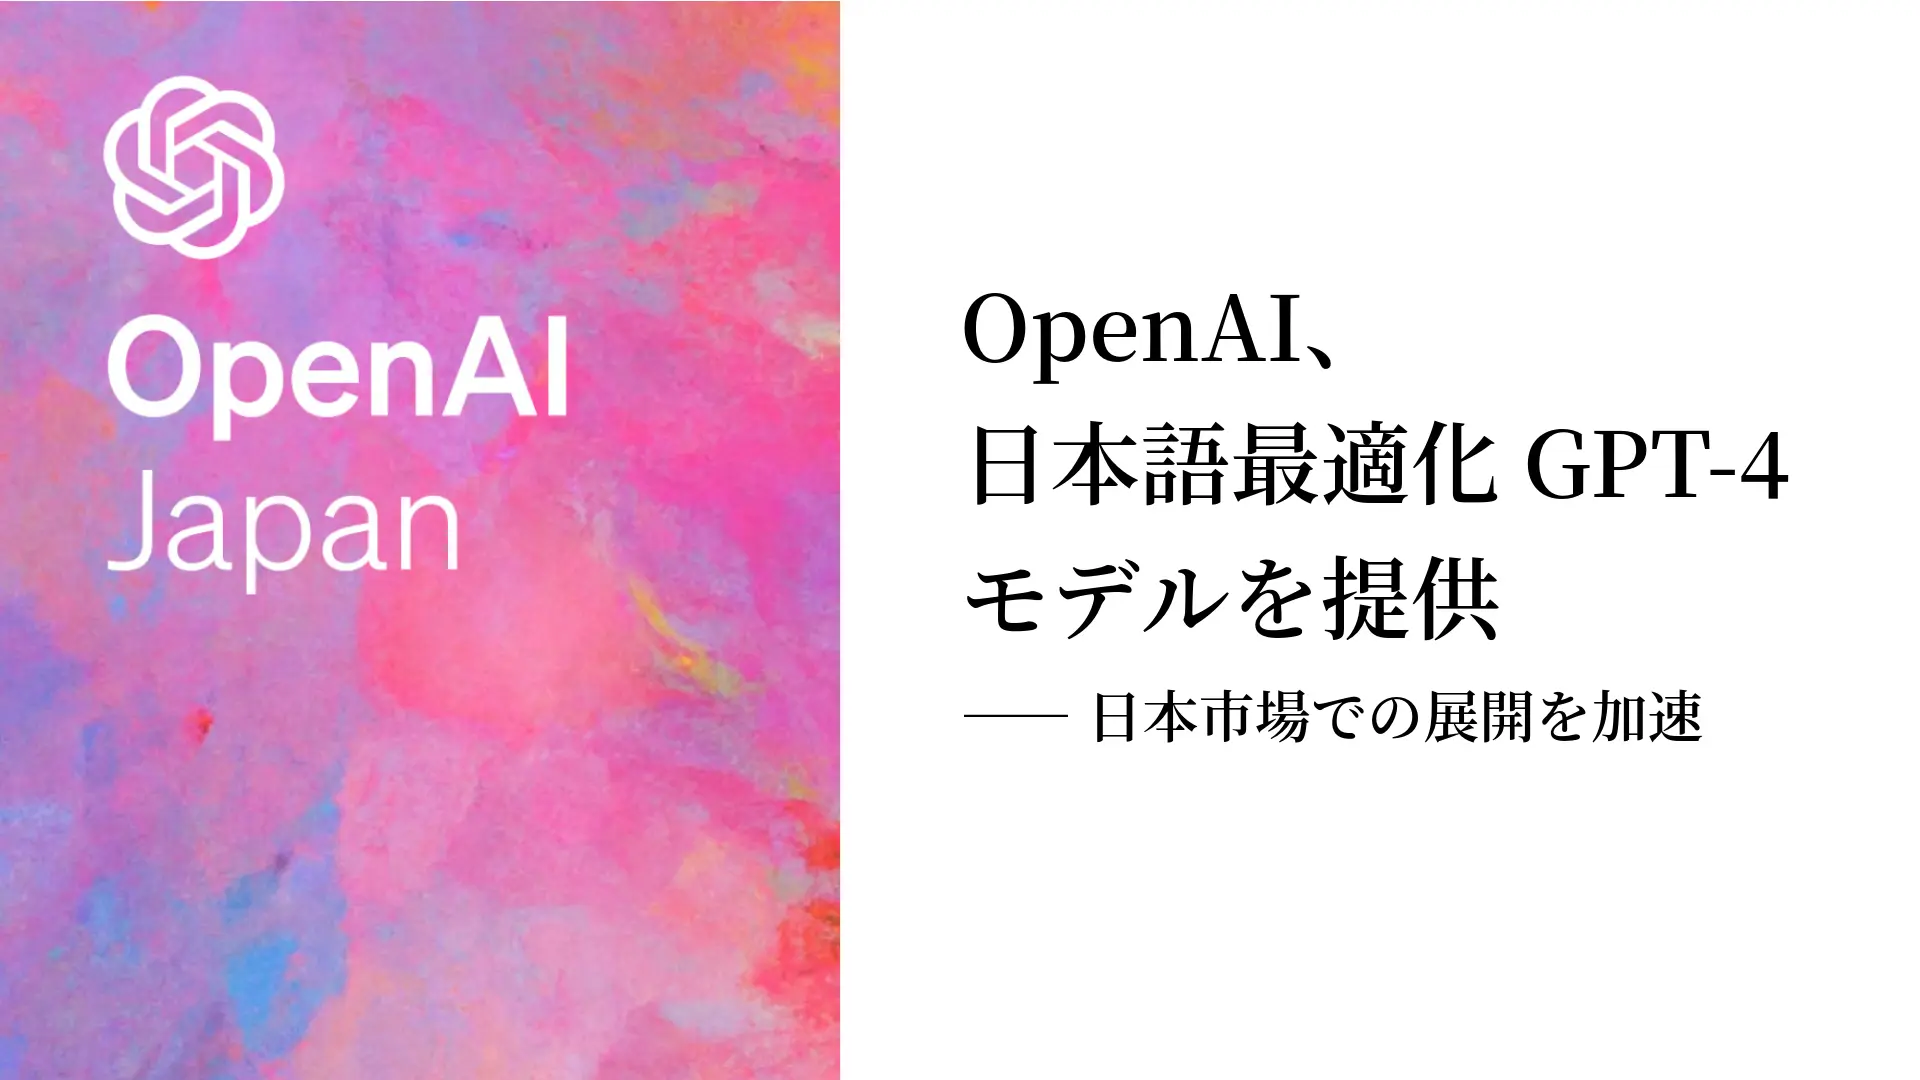 OpenAI、日本語最適化GPT-4モデルを提供――日本市場での展開を加速